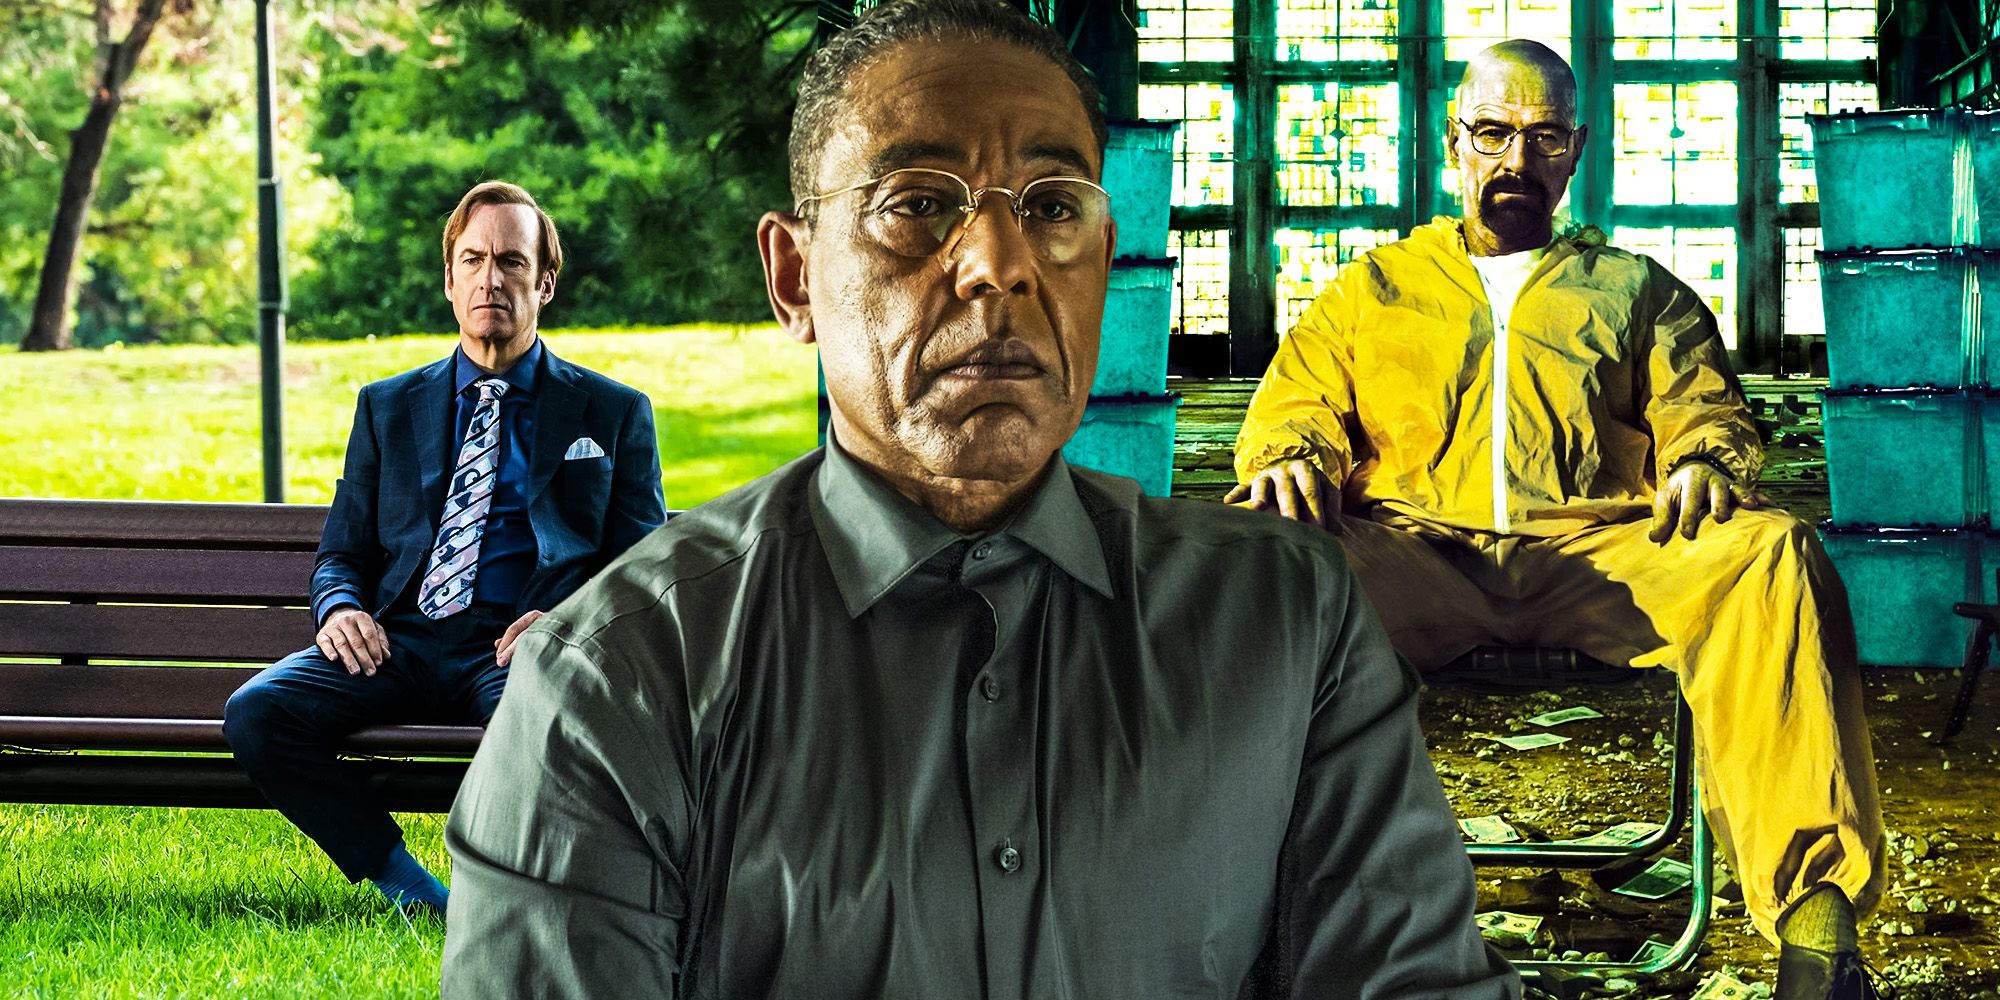 Las 15 escenas más inquietantes de Breaking Bad & Better Call Saul en las 11 temporadas